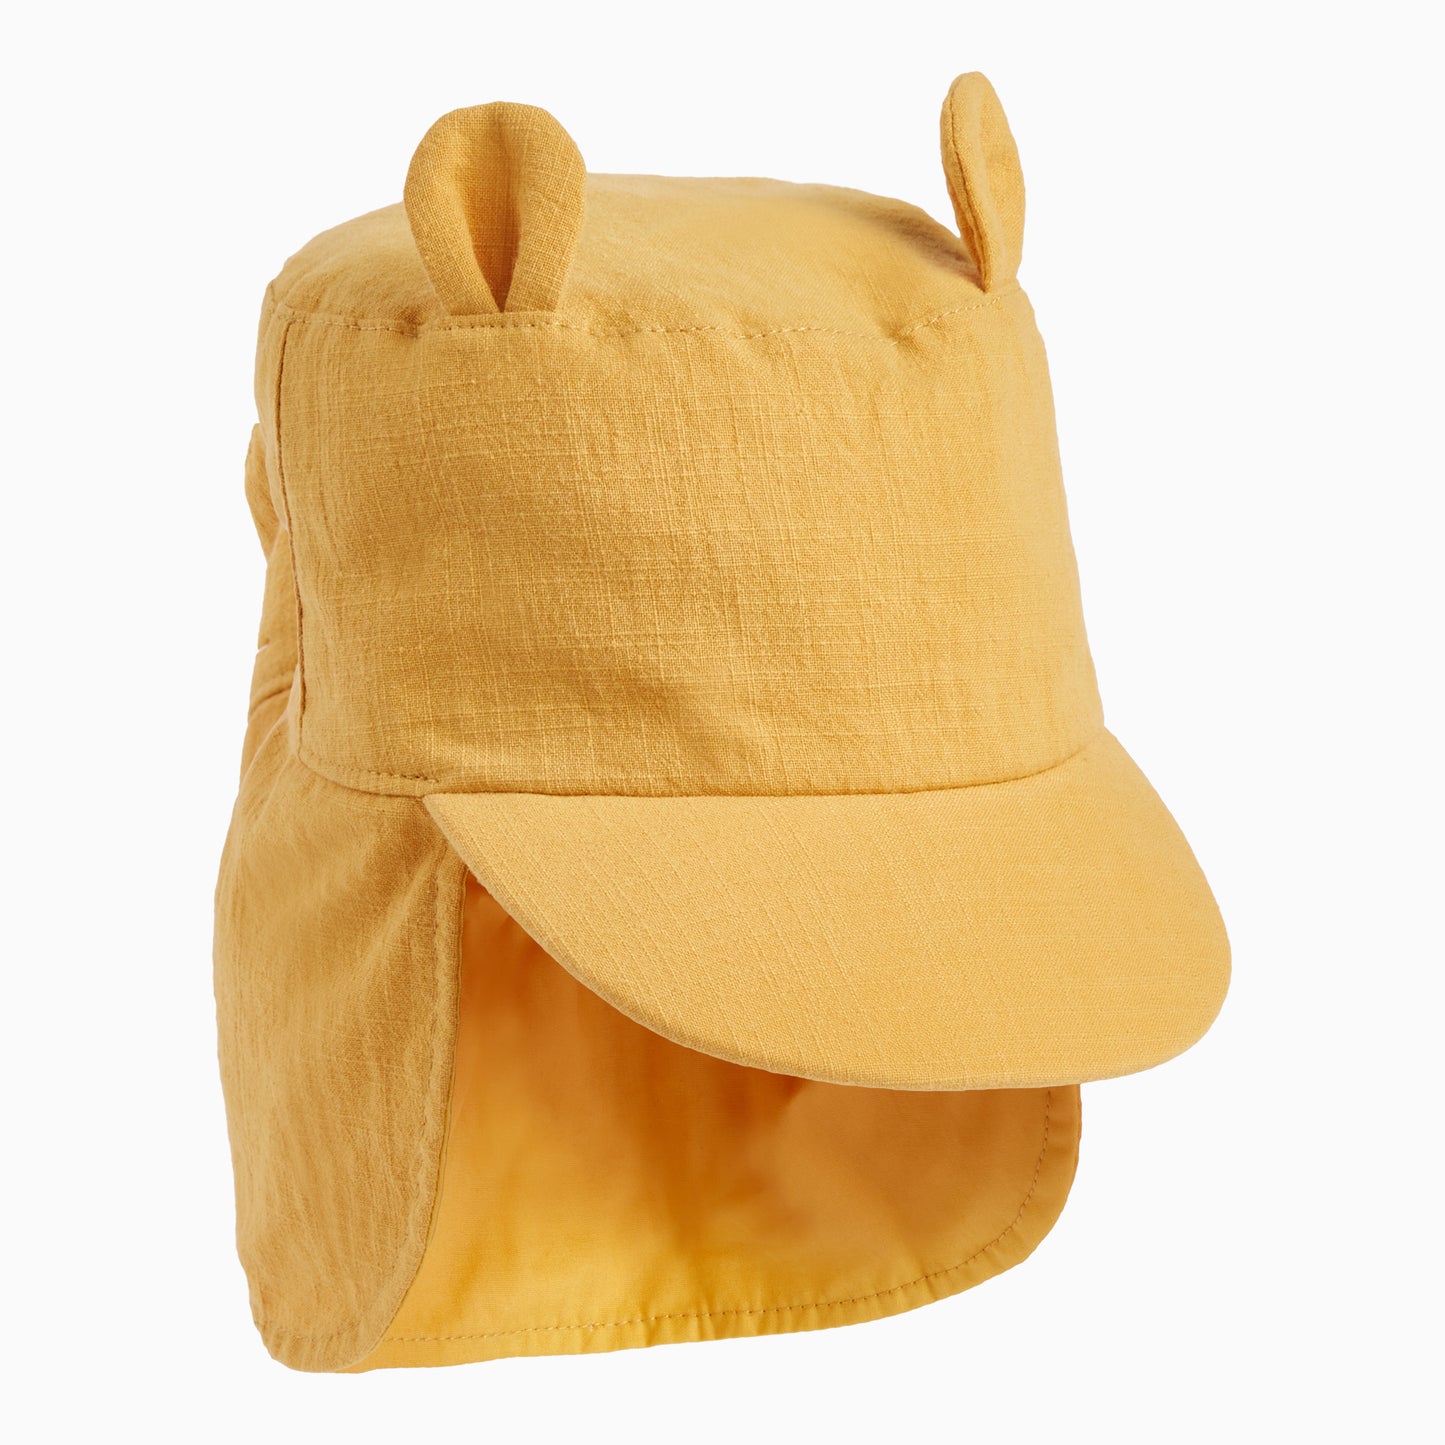 Bear sun hat